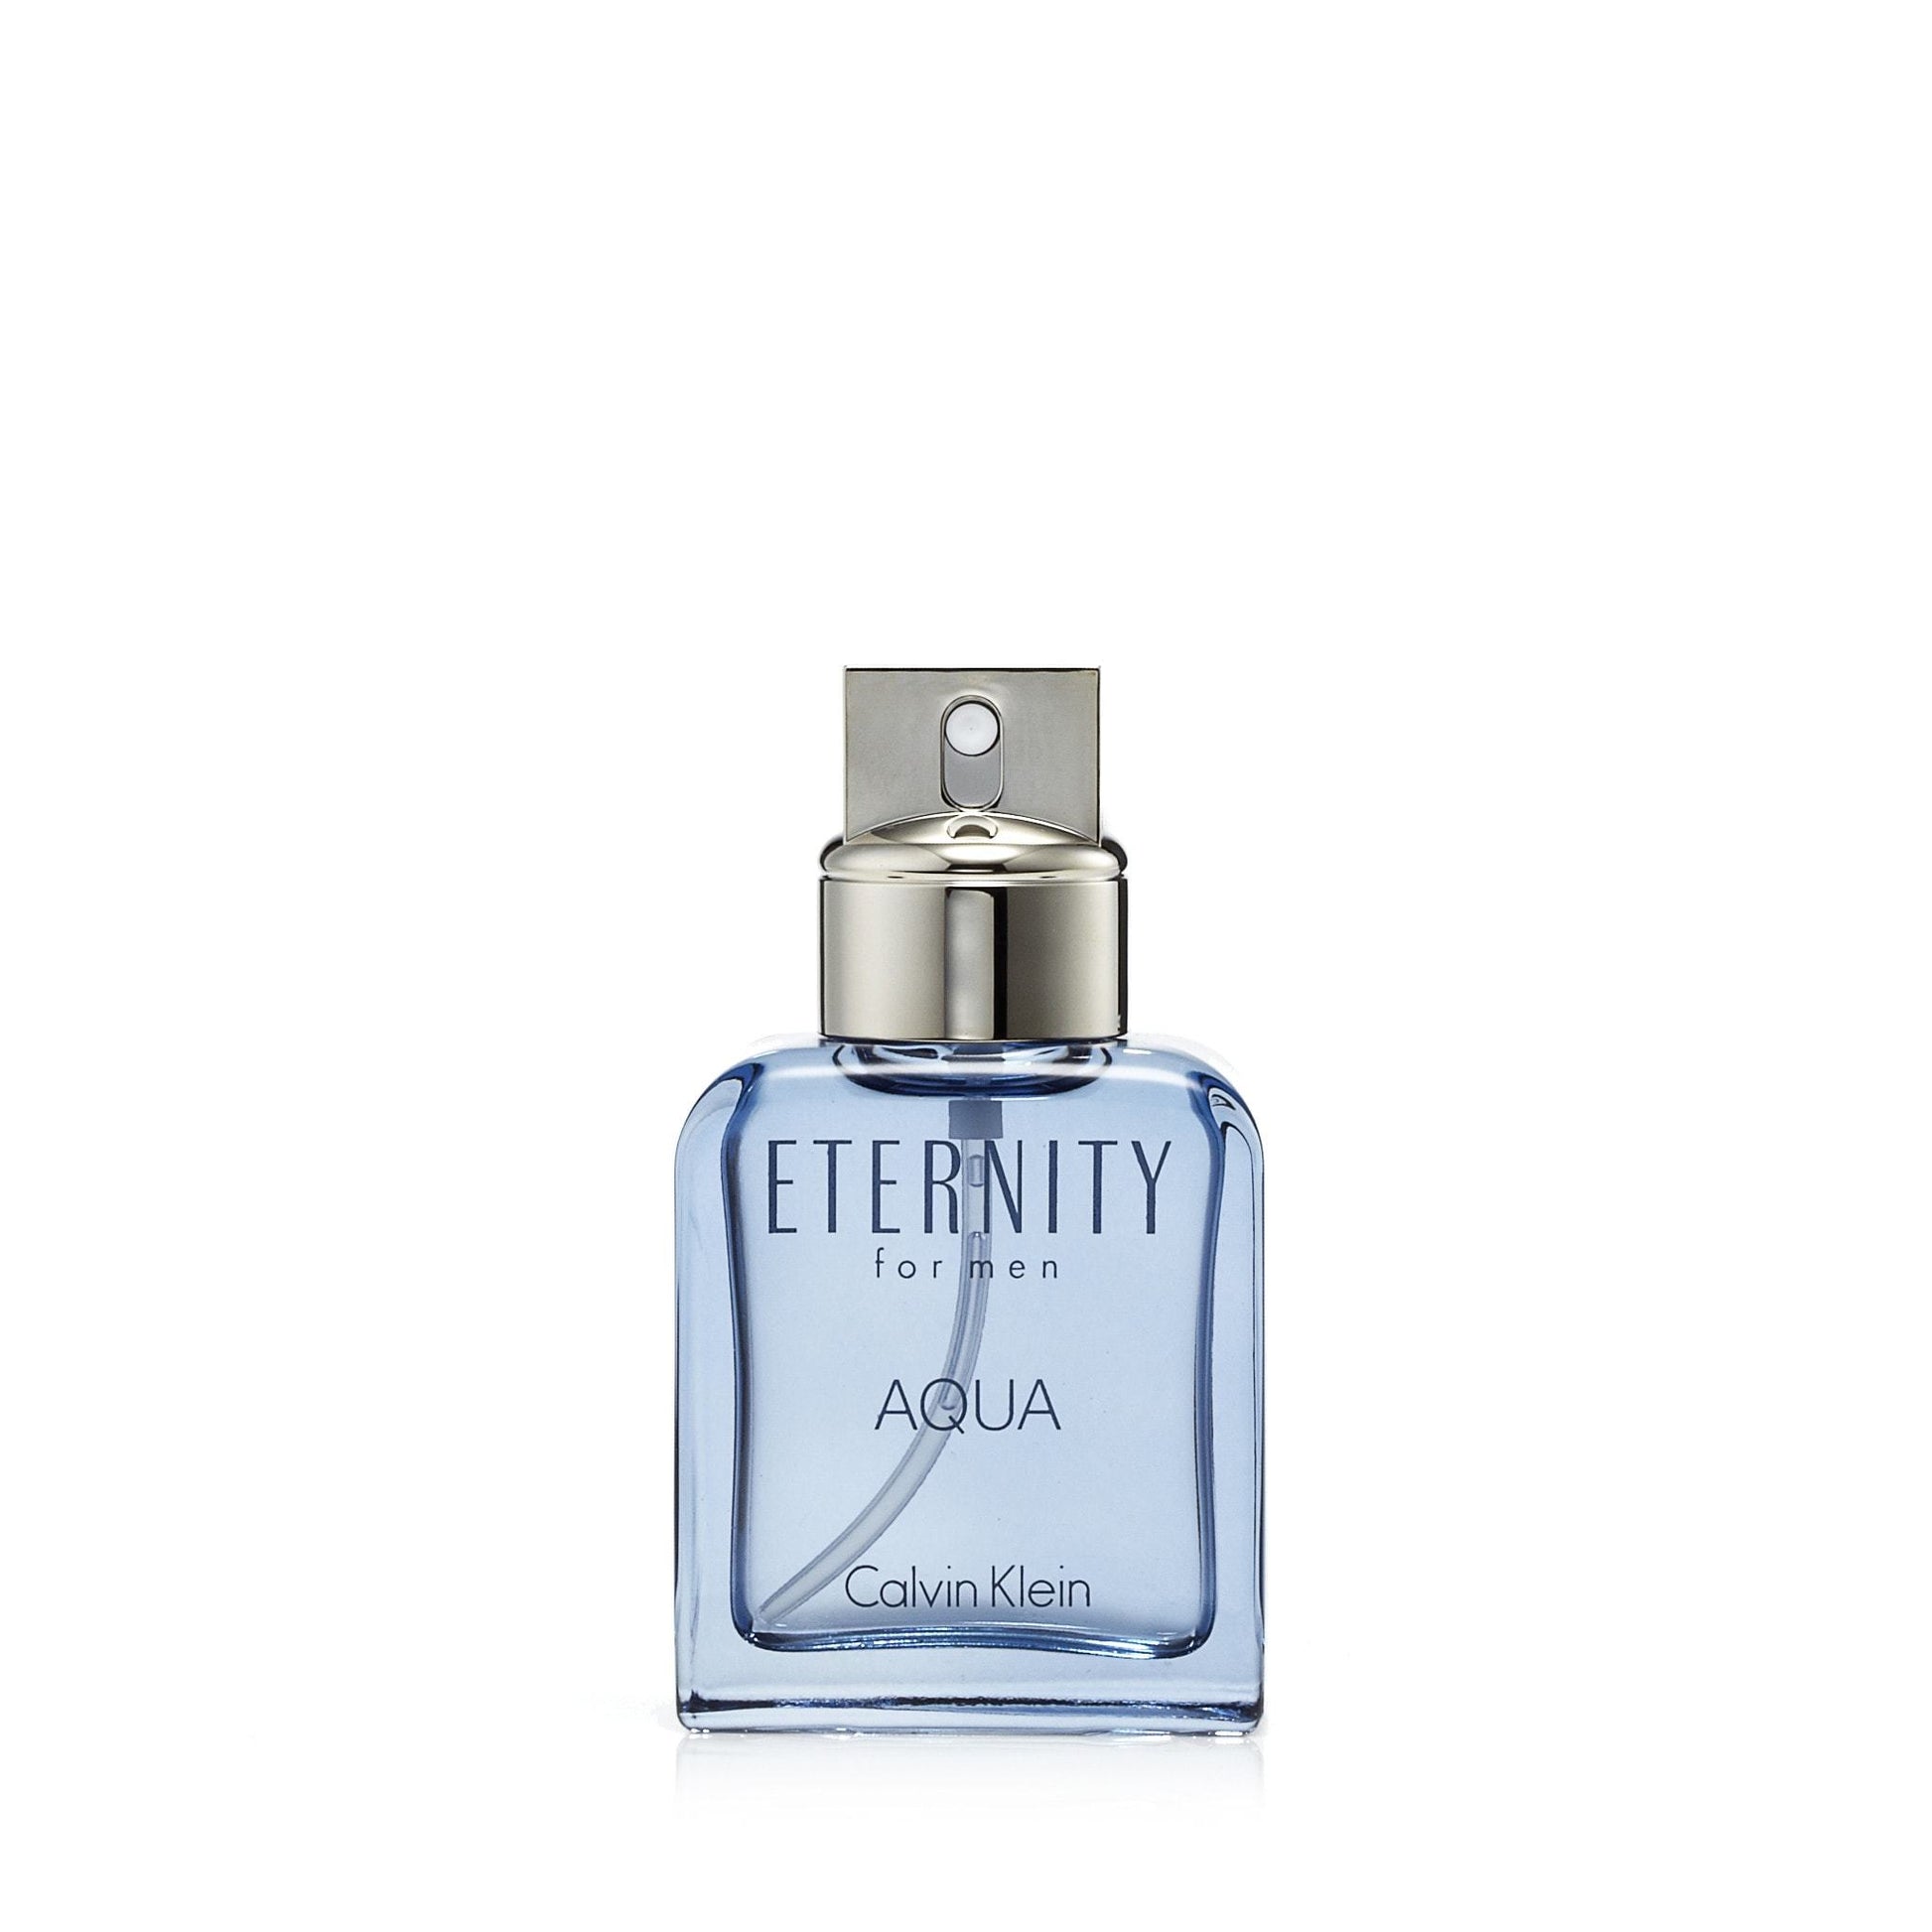 Eternity Aqua Eau de Toilette Spray for Men by Calvin Klein, Product image 4